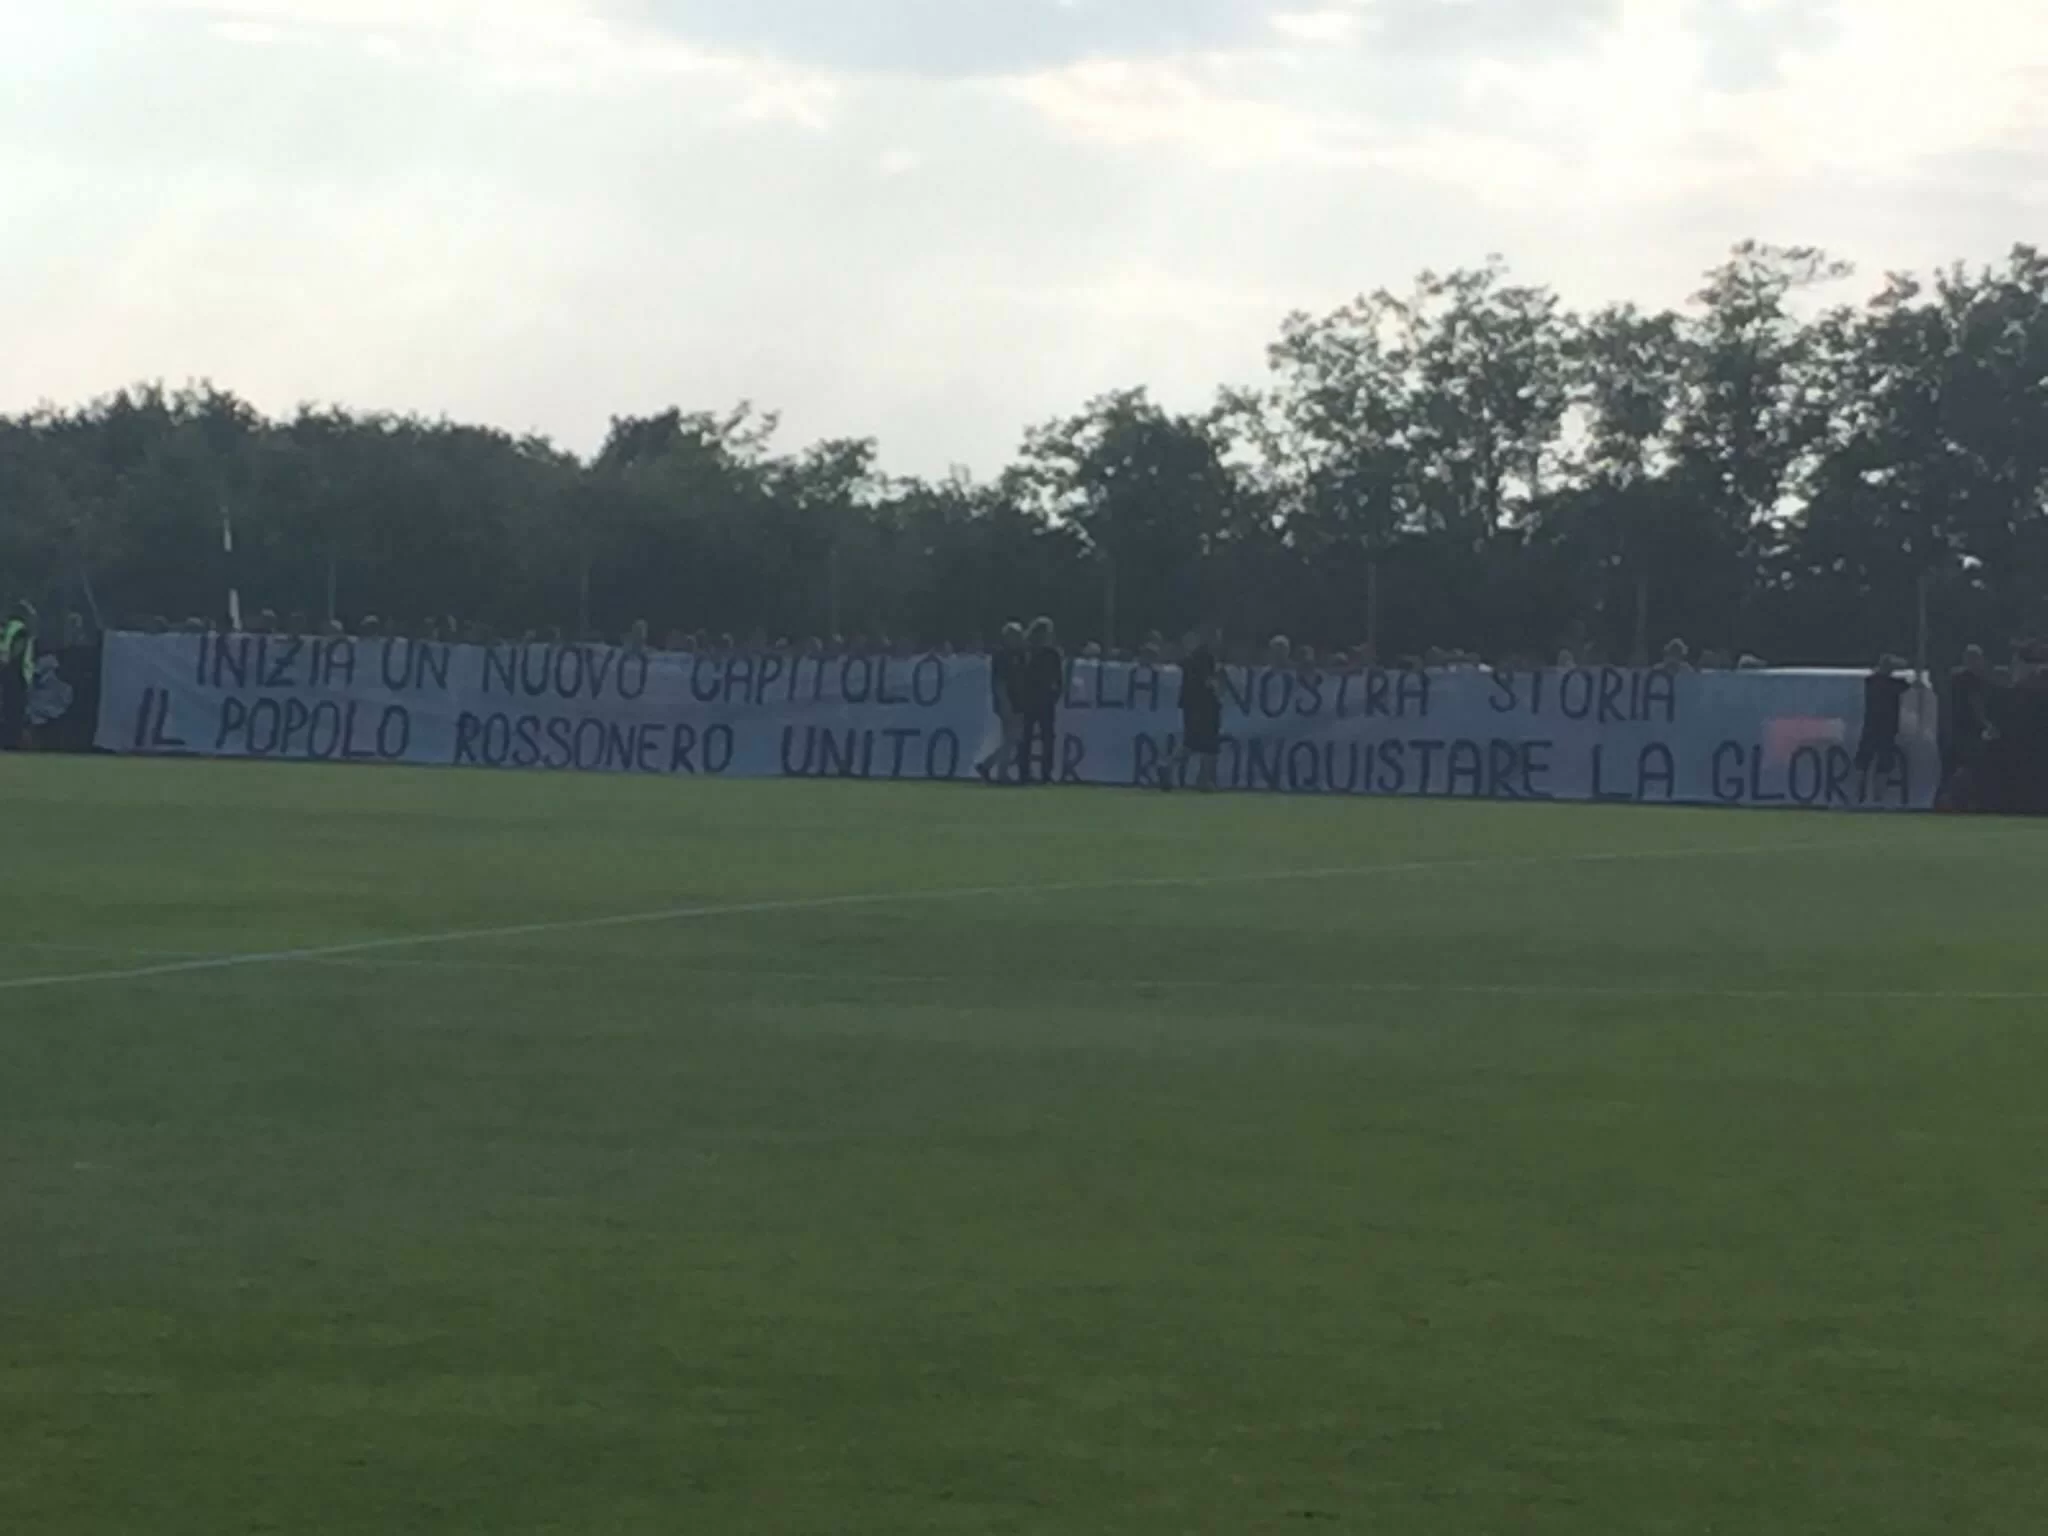 SM FOTO/ Striscione della Curva: “Il popolo rossonero unito per riconquistare la gloria”